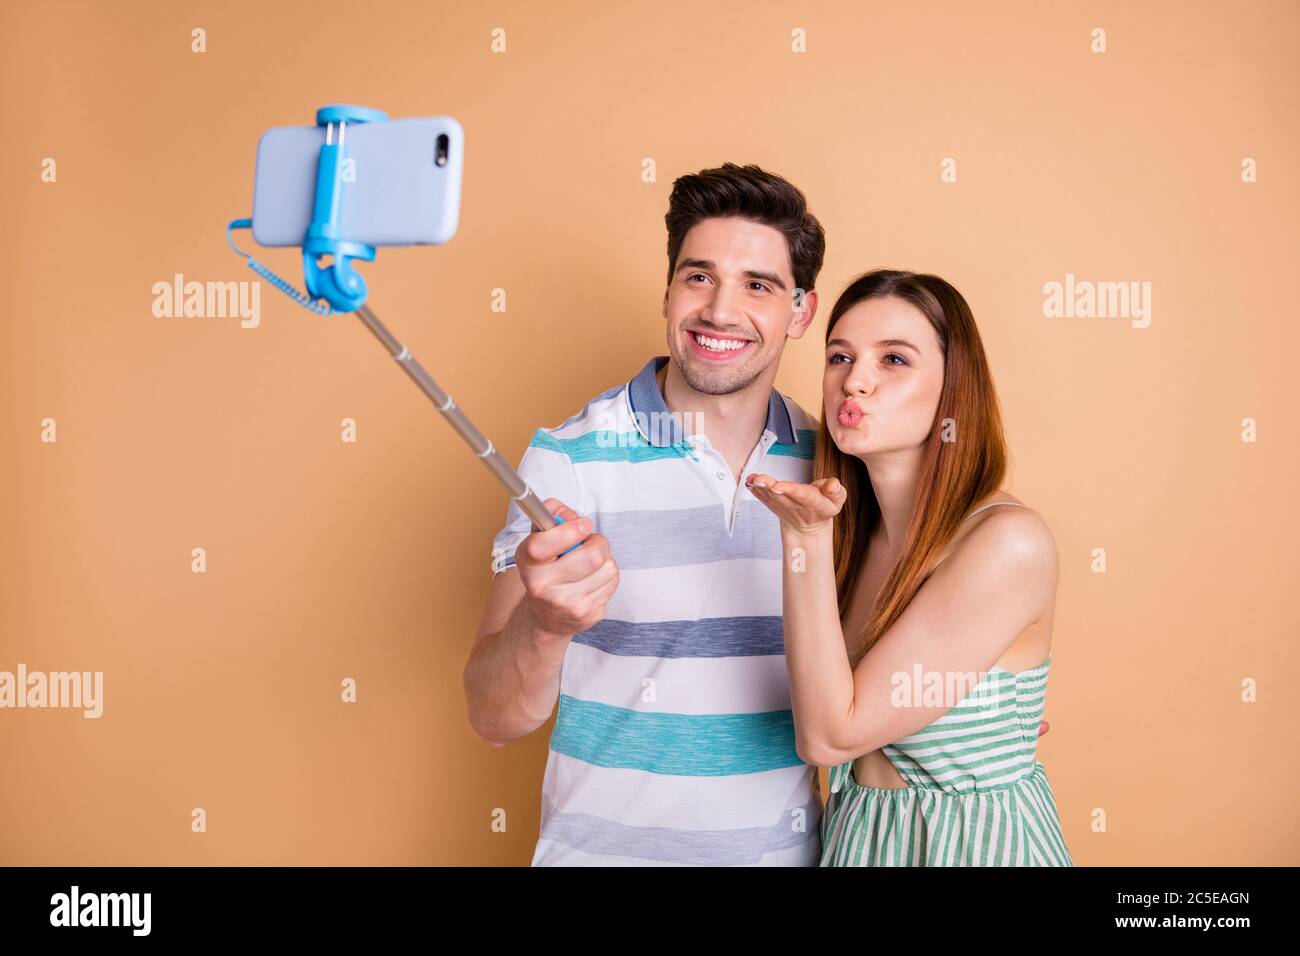 Foto di bella signora bel ragazzo coppia tenere selfie bastone fotografando inviare baci aria popolare famiglia blogger indossare casual estate vestiti isolati Foto Stock